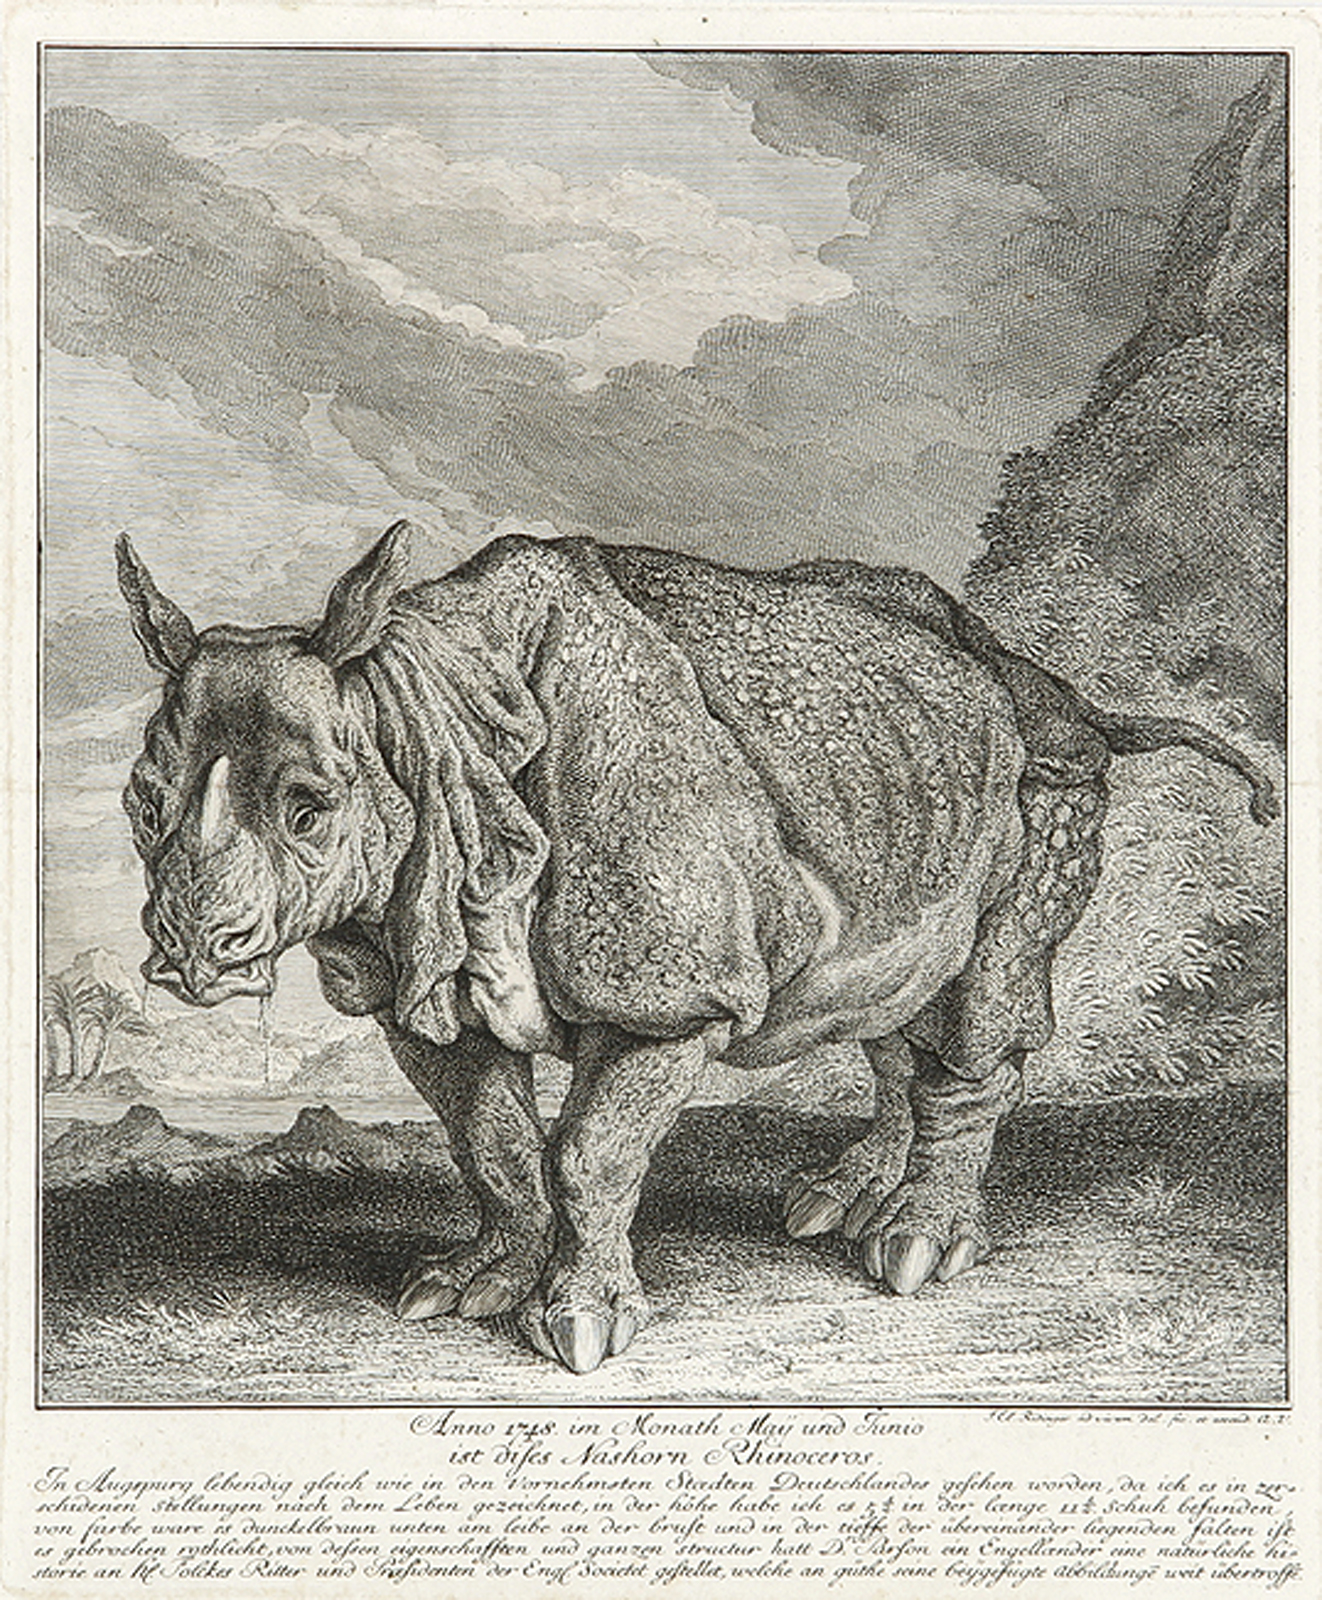 Anno 1748 im Monath May und Junio ist dieses Nashorn Rhinoceros in Augspurg...